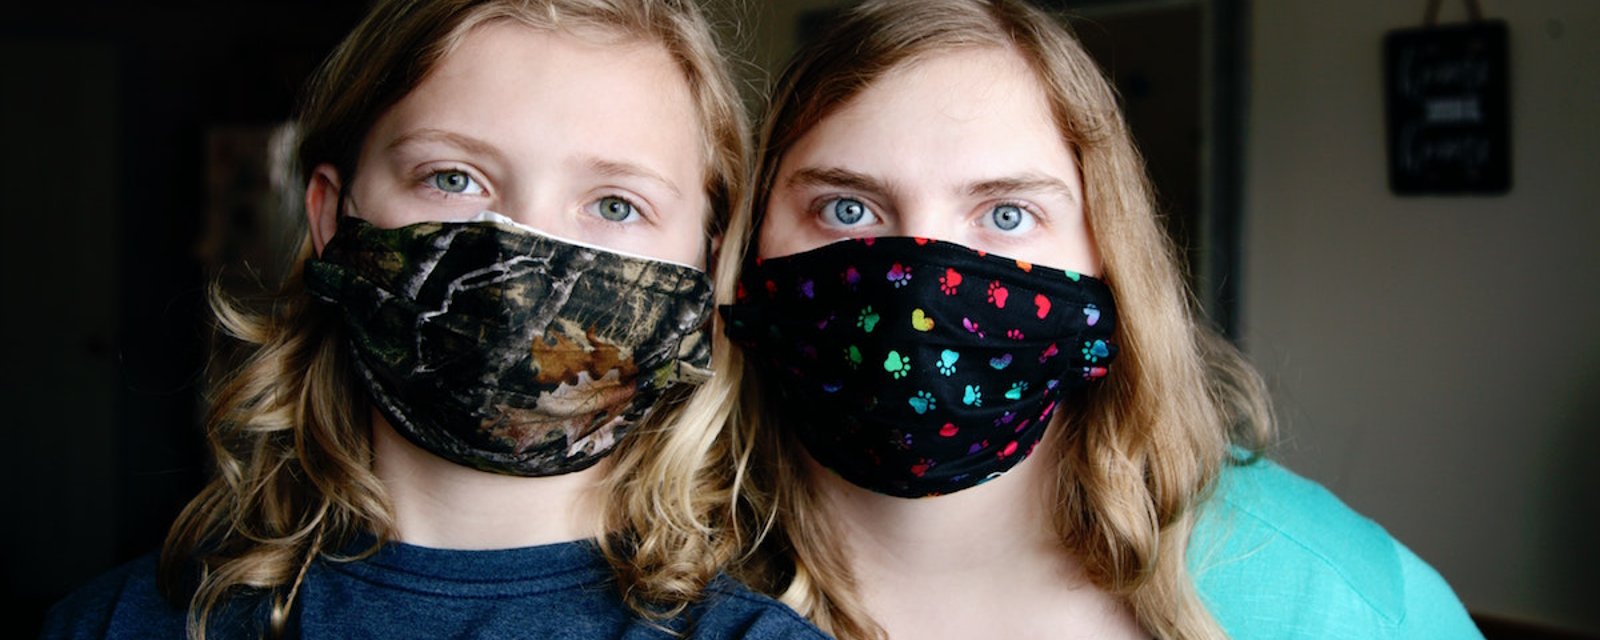 Masques maison pour se protéger de la COVID-19: quels sont les tissus les plus efficaces?